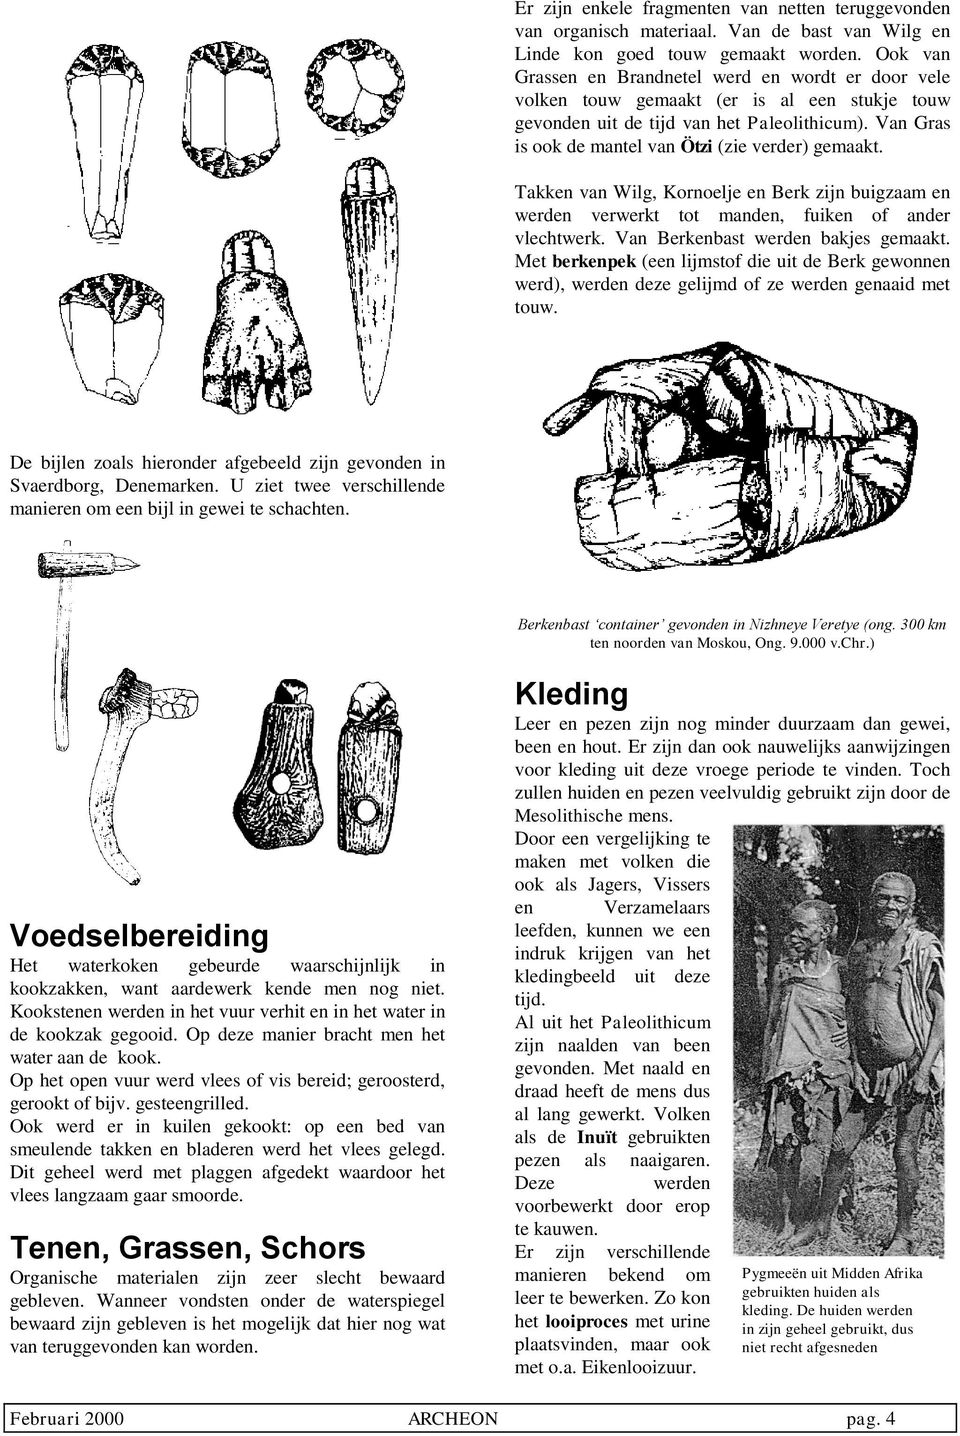 Van Gras is ook de mantel van Ötzi (zie verder) gemaakt. Takken van Wilg, Kornoelje en Berk zijn buigzaam en werden verwerkt tot manden, fuiken of ander vlechtwerk.